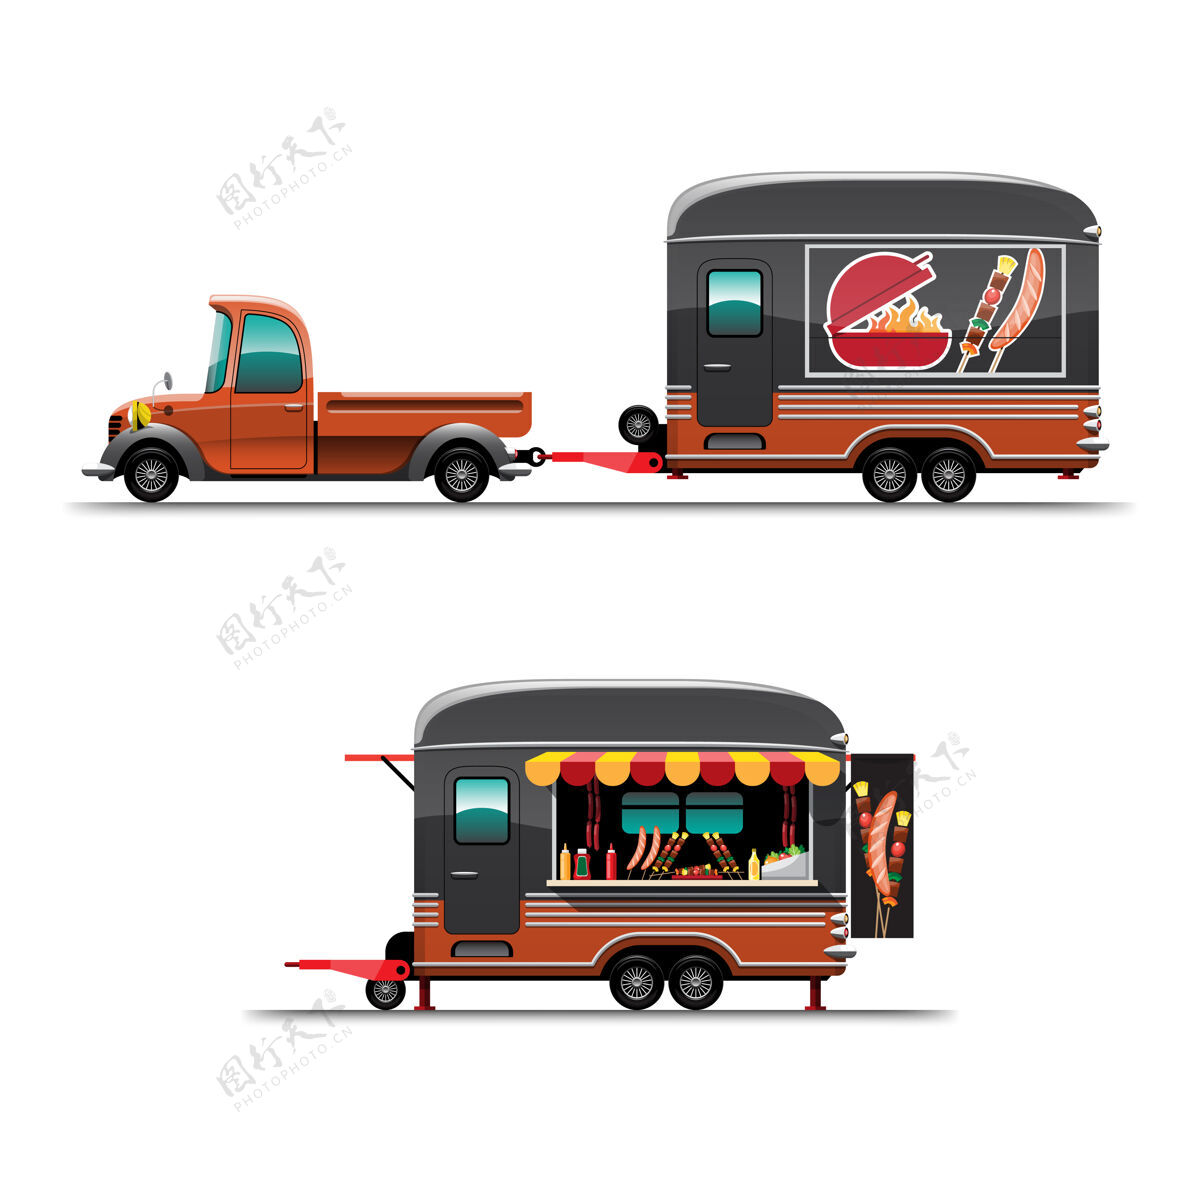 汽车拖车食品车侧视图 带柜台烤肉架 车顶有大型模型hotdoc 插图车轮美食咖啡馆